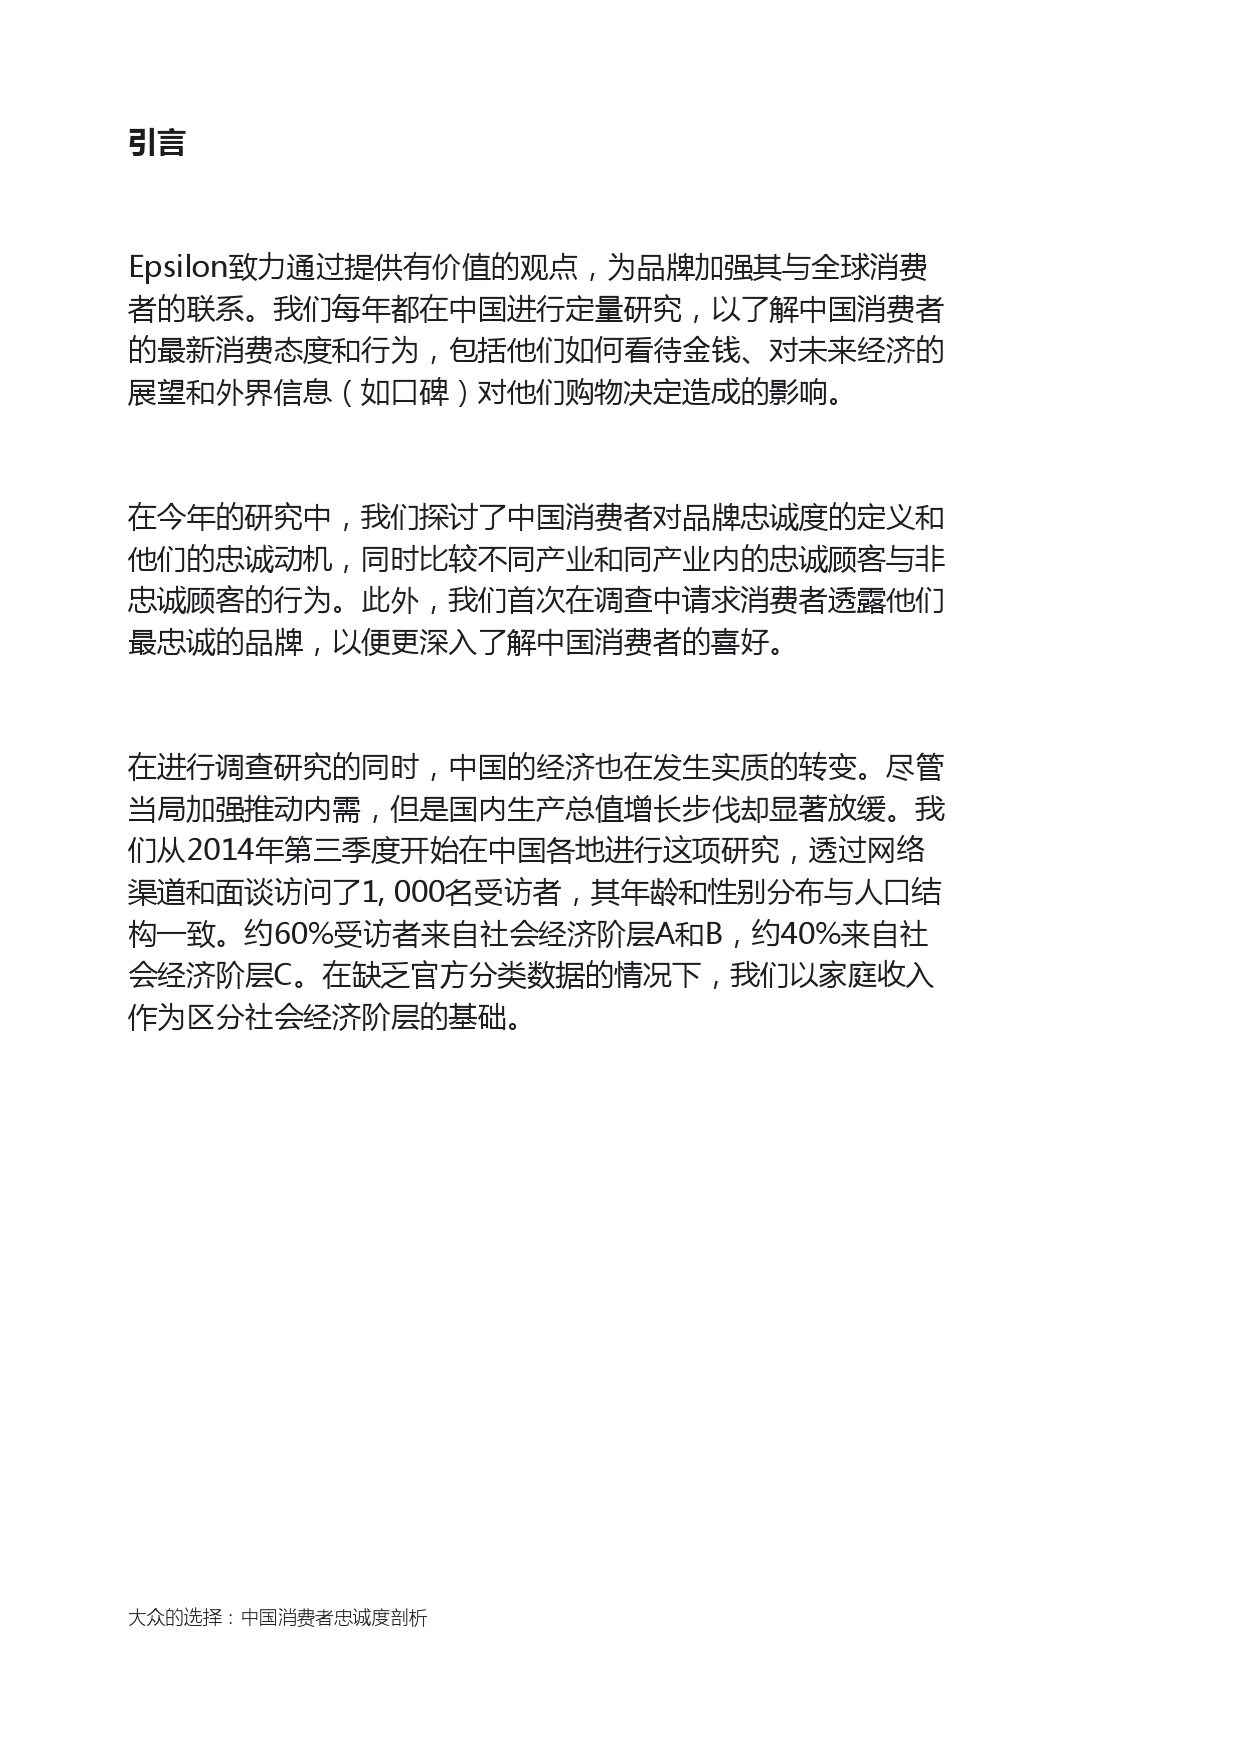 Epsilon_China_Loyalty_Study_report_CN_000002